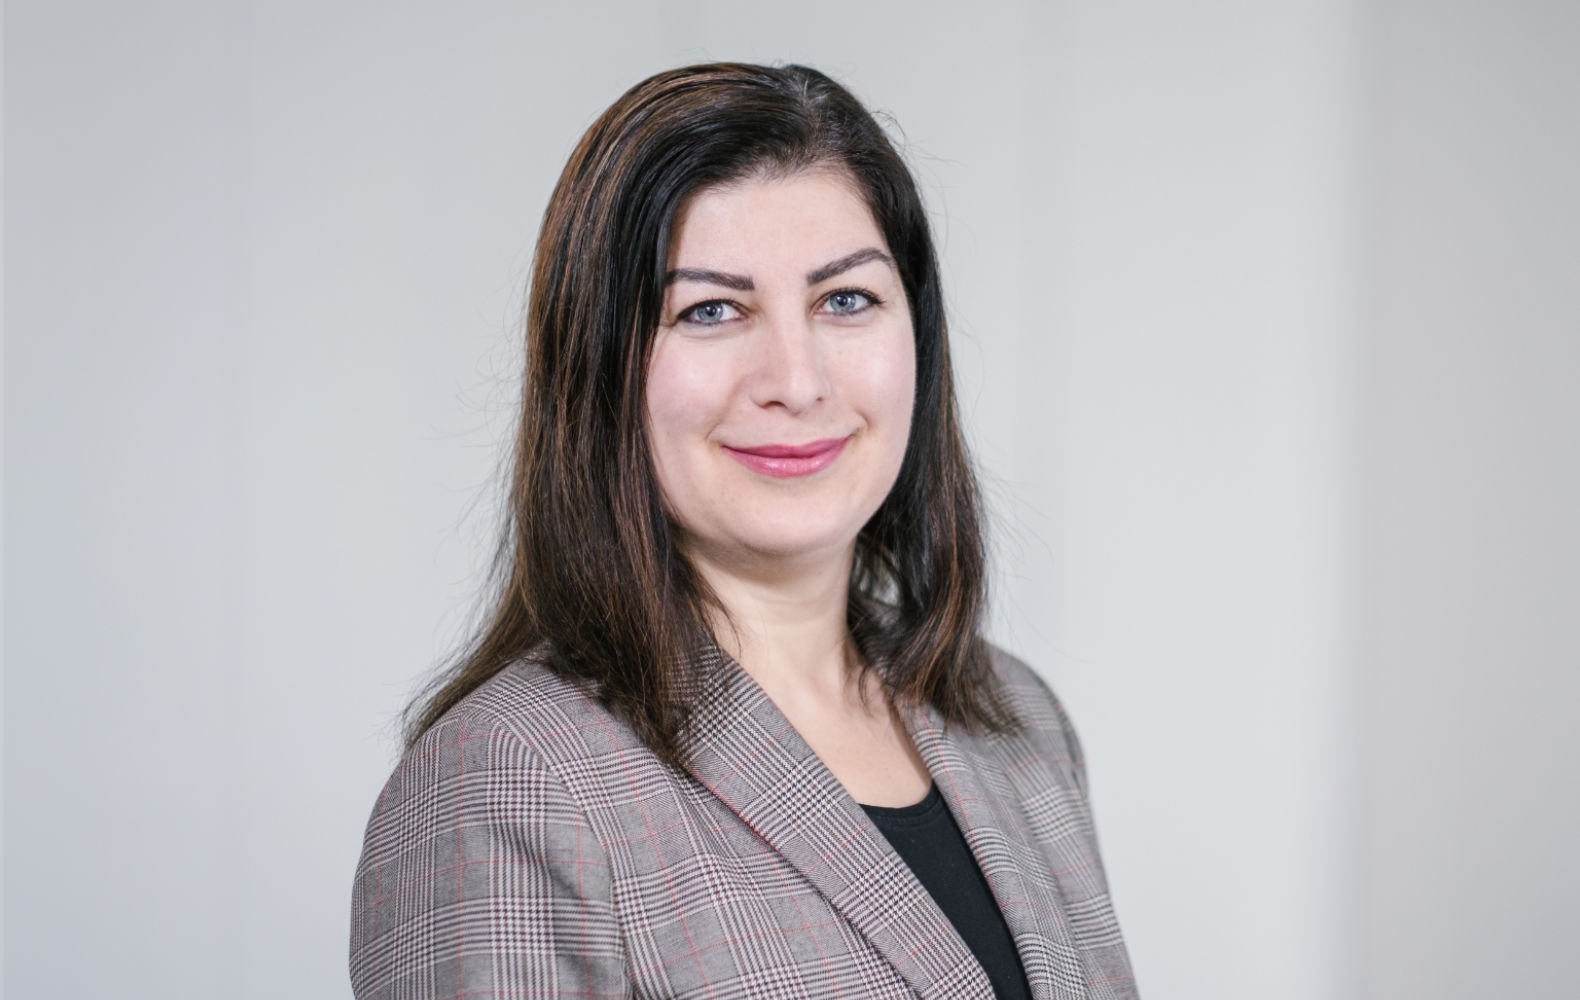 Zehra Seçkin, Parlamentarische Referentin